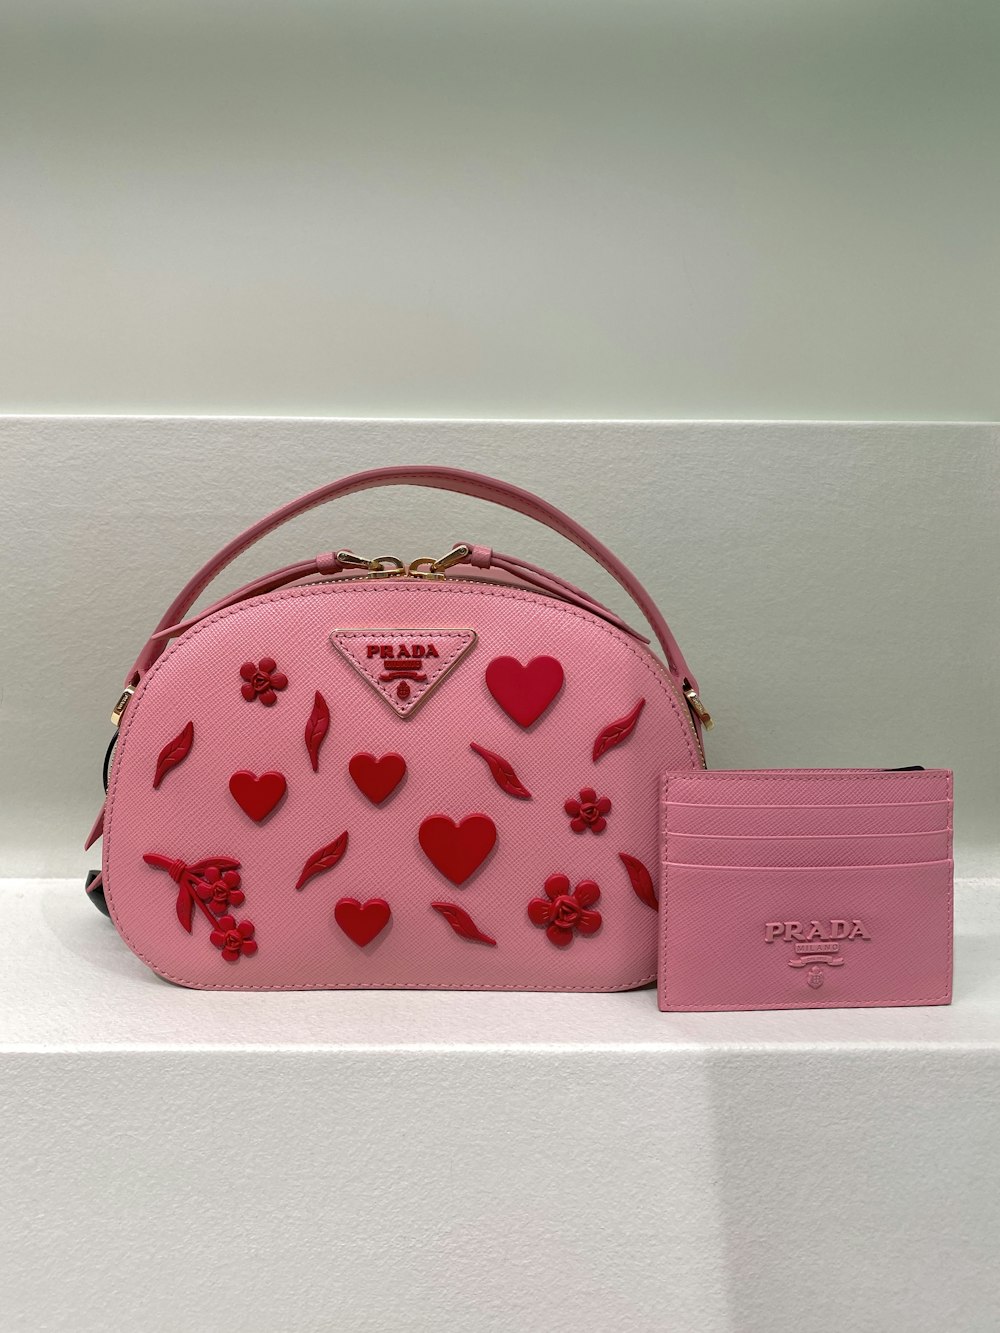 eine rosa Geldbörse mit Herzen und Blumen darauf